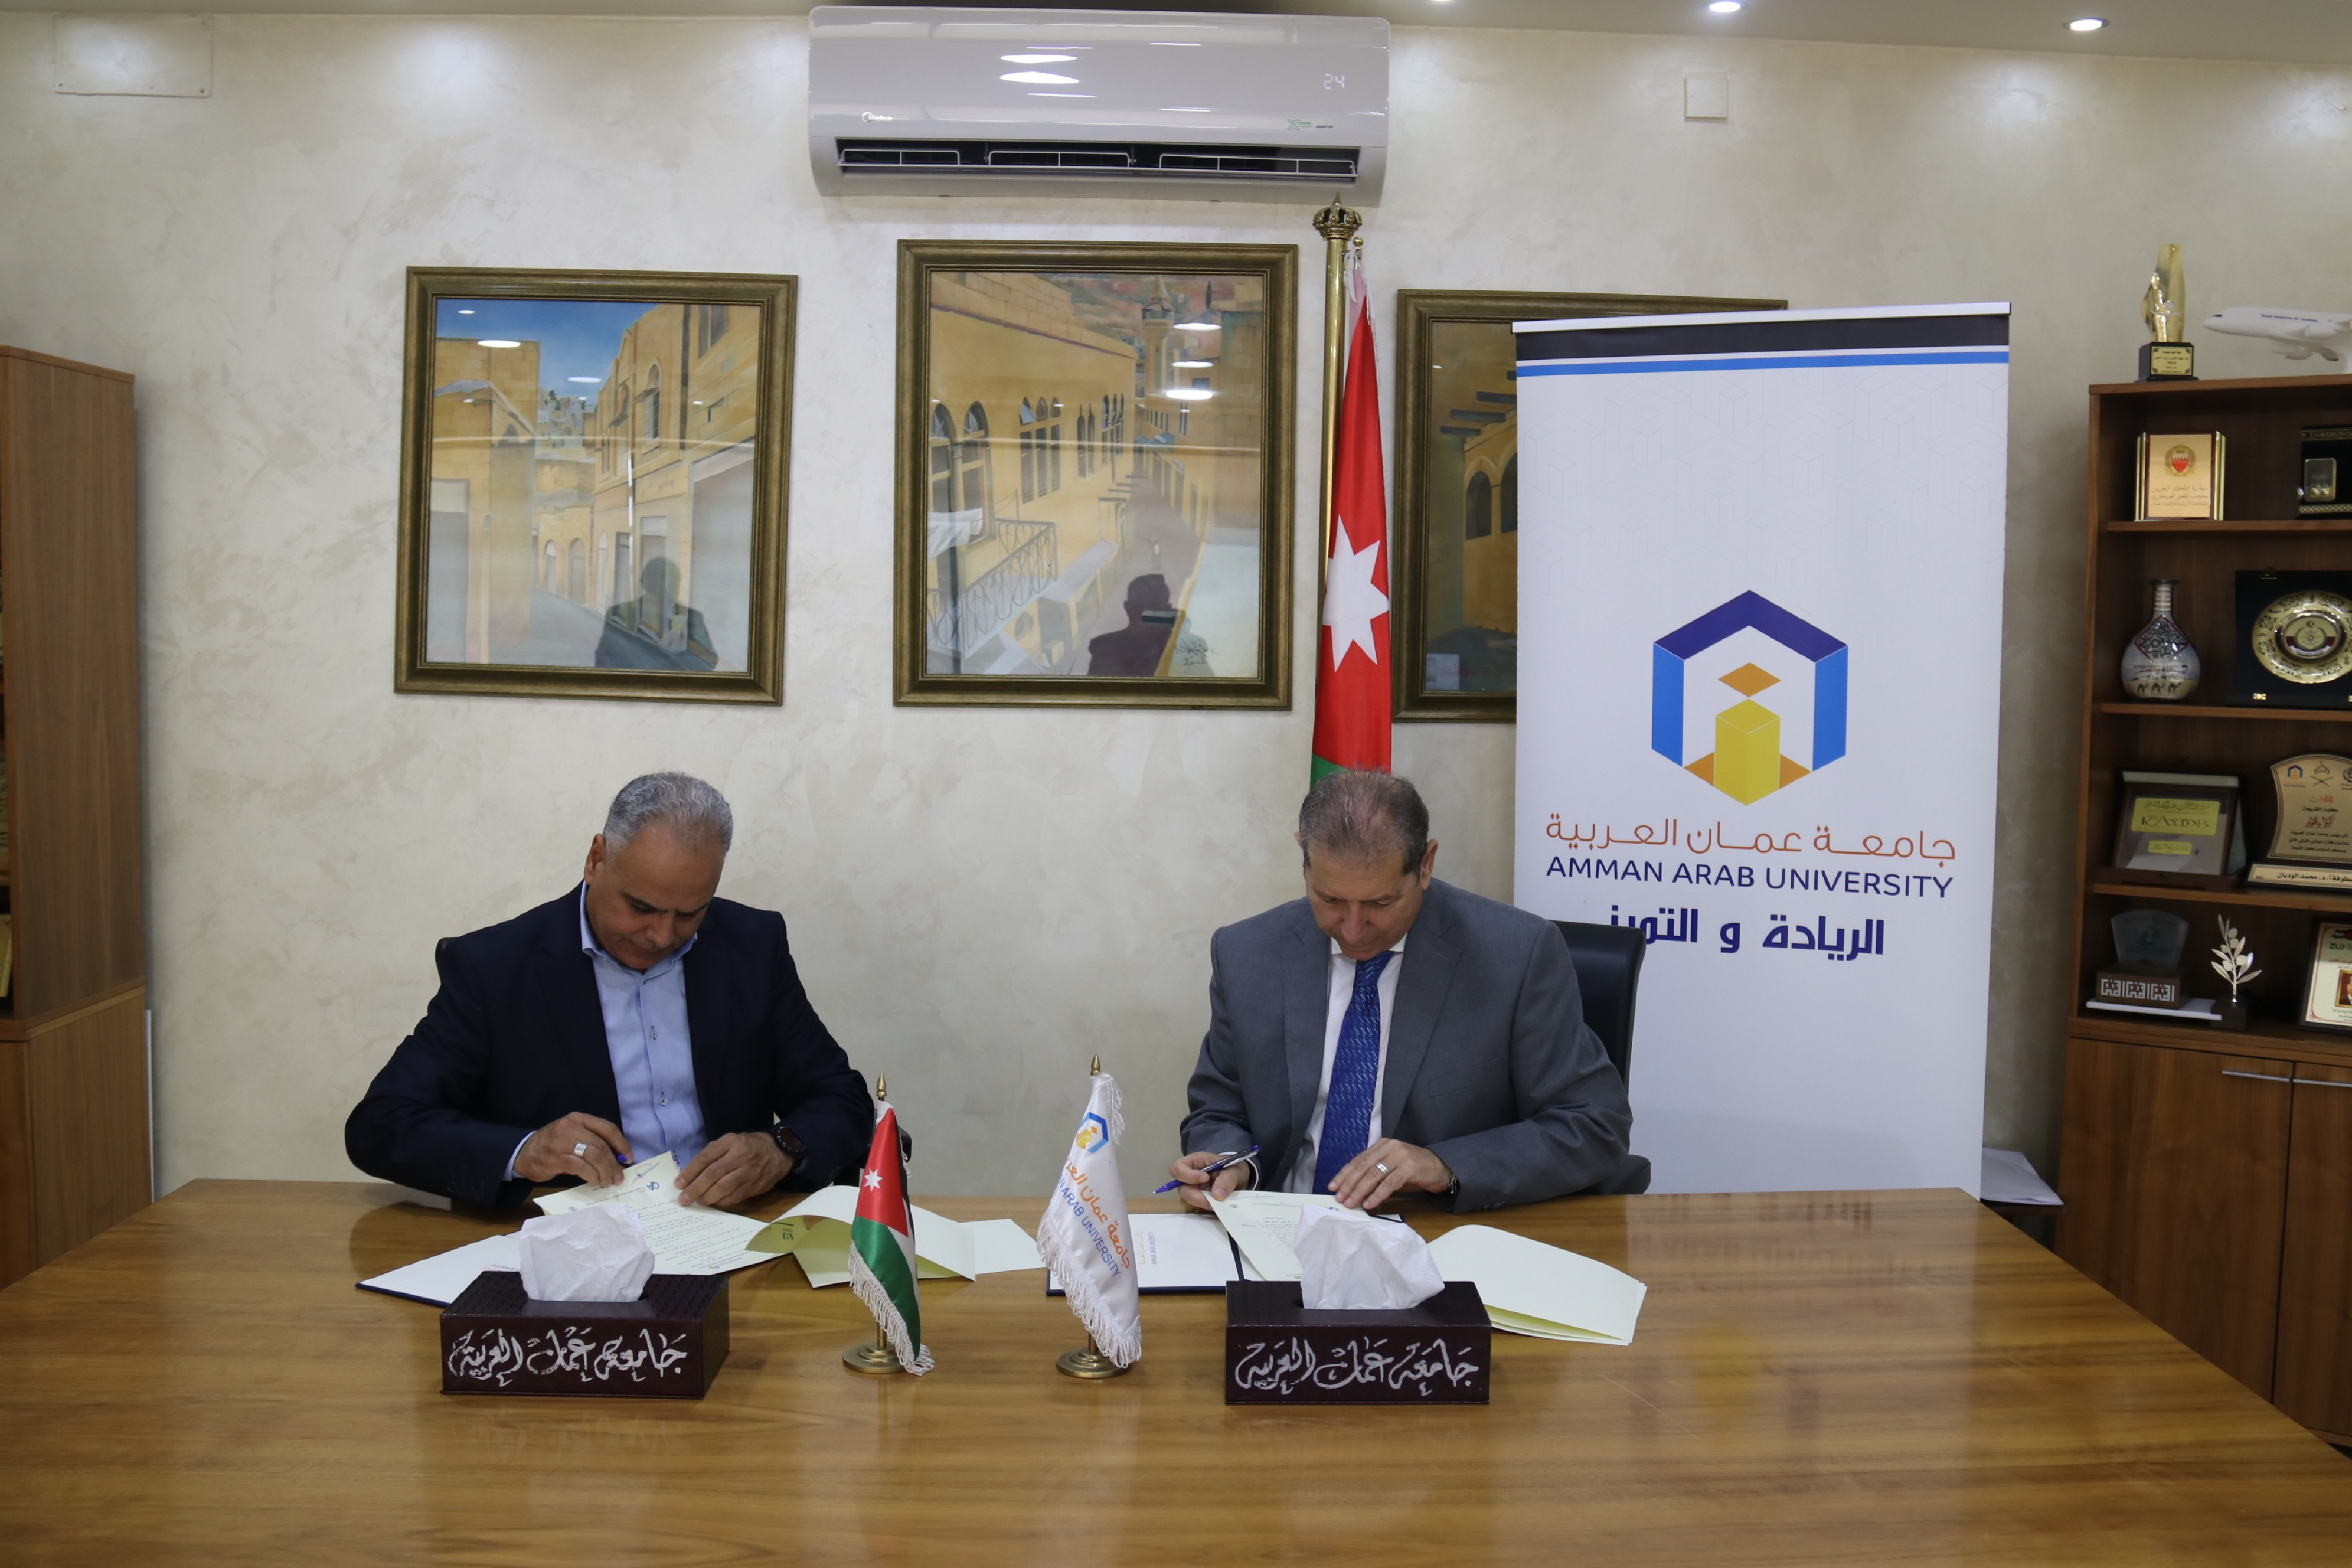 اتفاقية تعاون مشترك بين جامعة عمان العربية وأكاديمية إدارة للدراسات والتطوير الإداري3